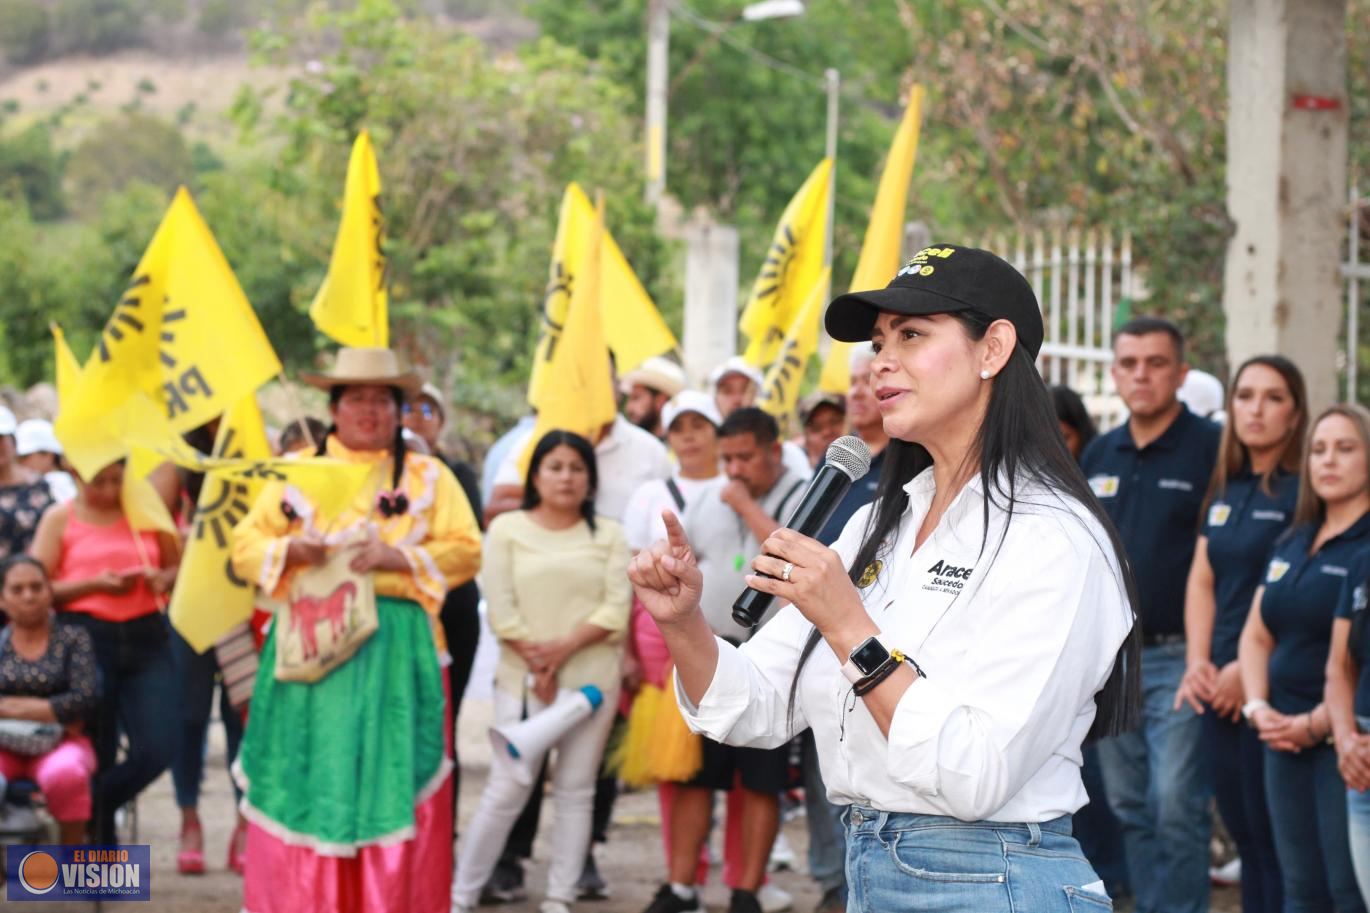 No hay marcha atrás, en Tuxpan ¡vamos a ganar juntas y juntos!: Araceli Saucedo